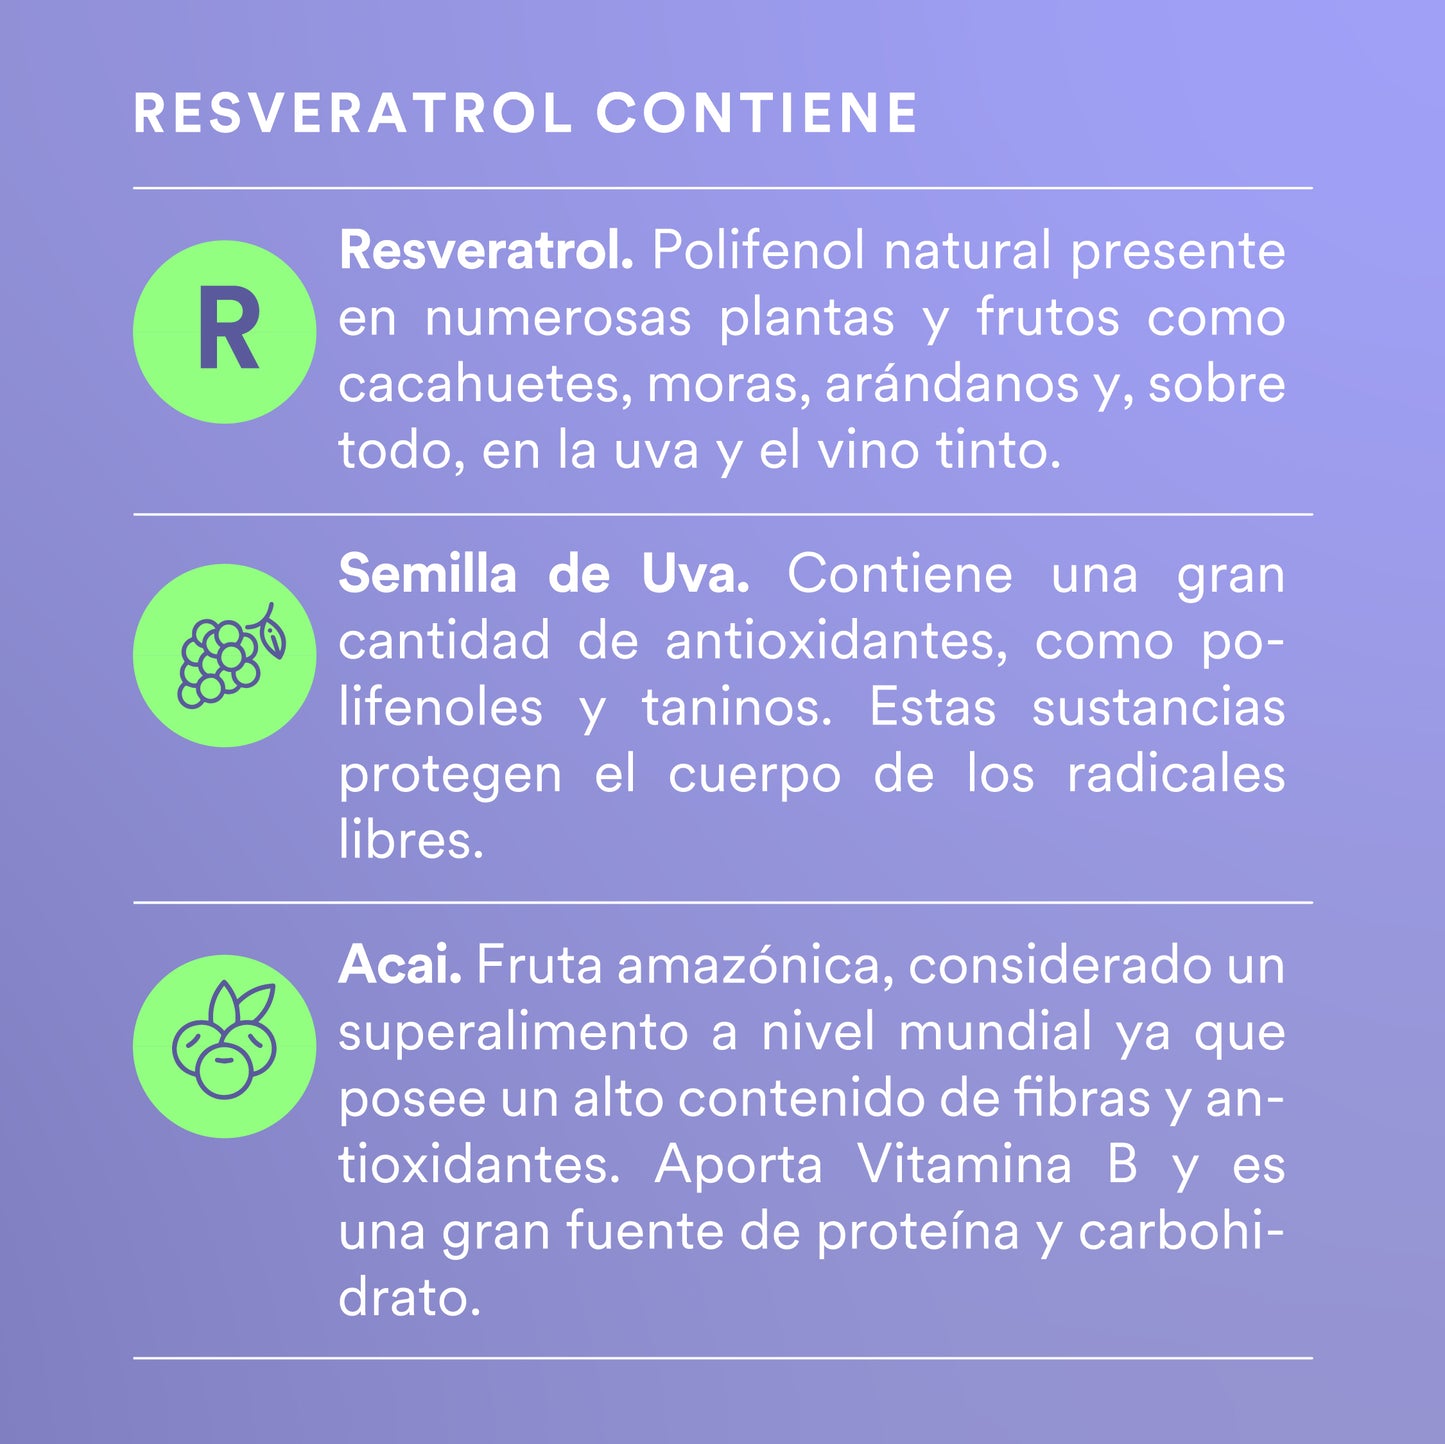 RESVERATROL - Semilla de Uva • Resveratrol • Açaí | 120 cápsulas